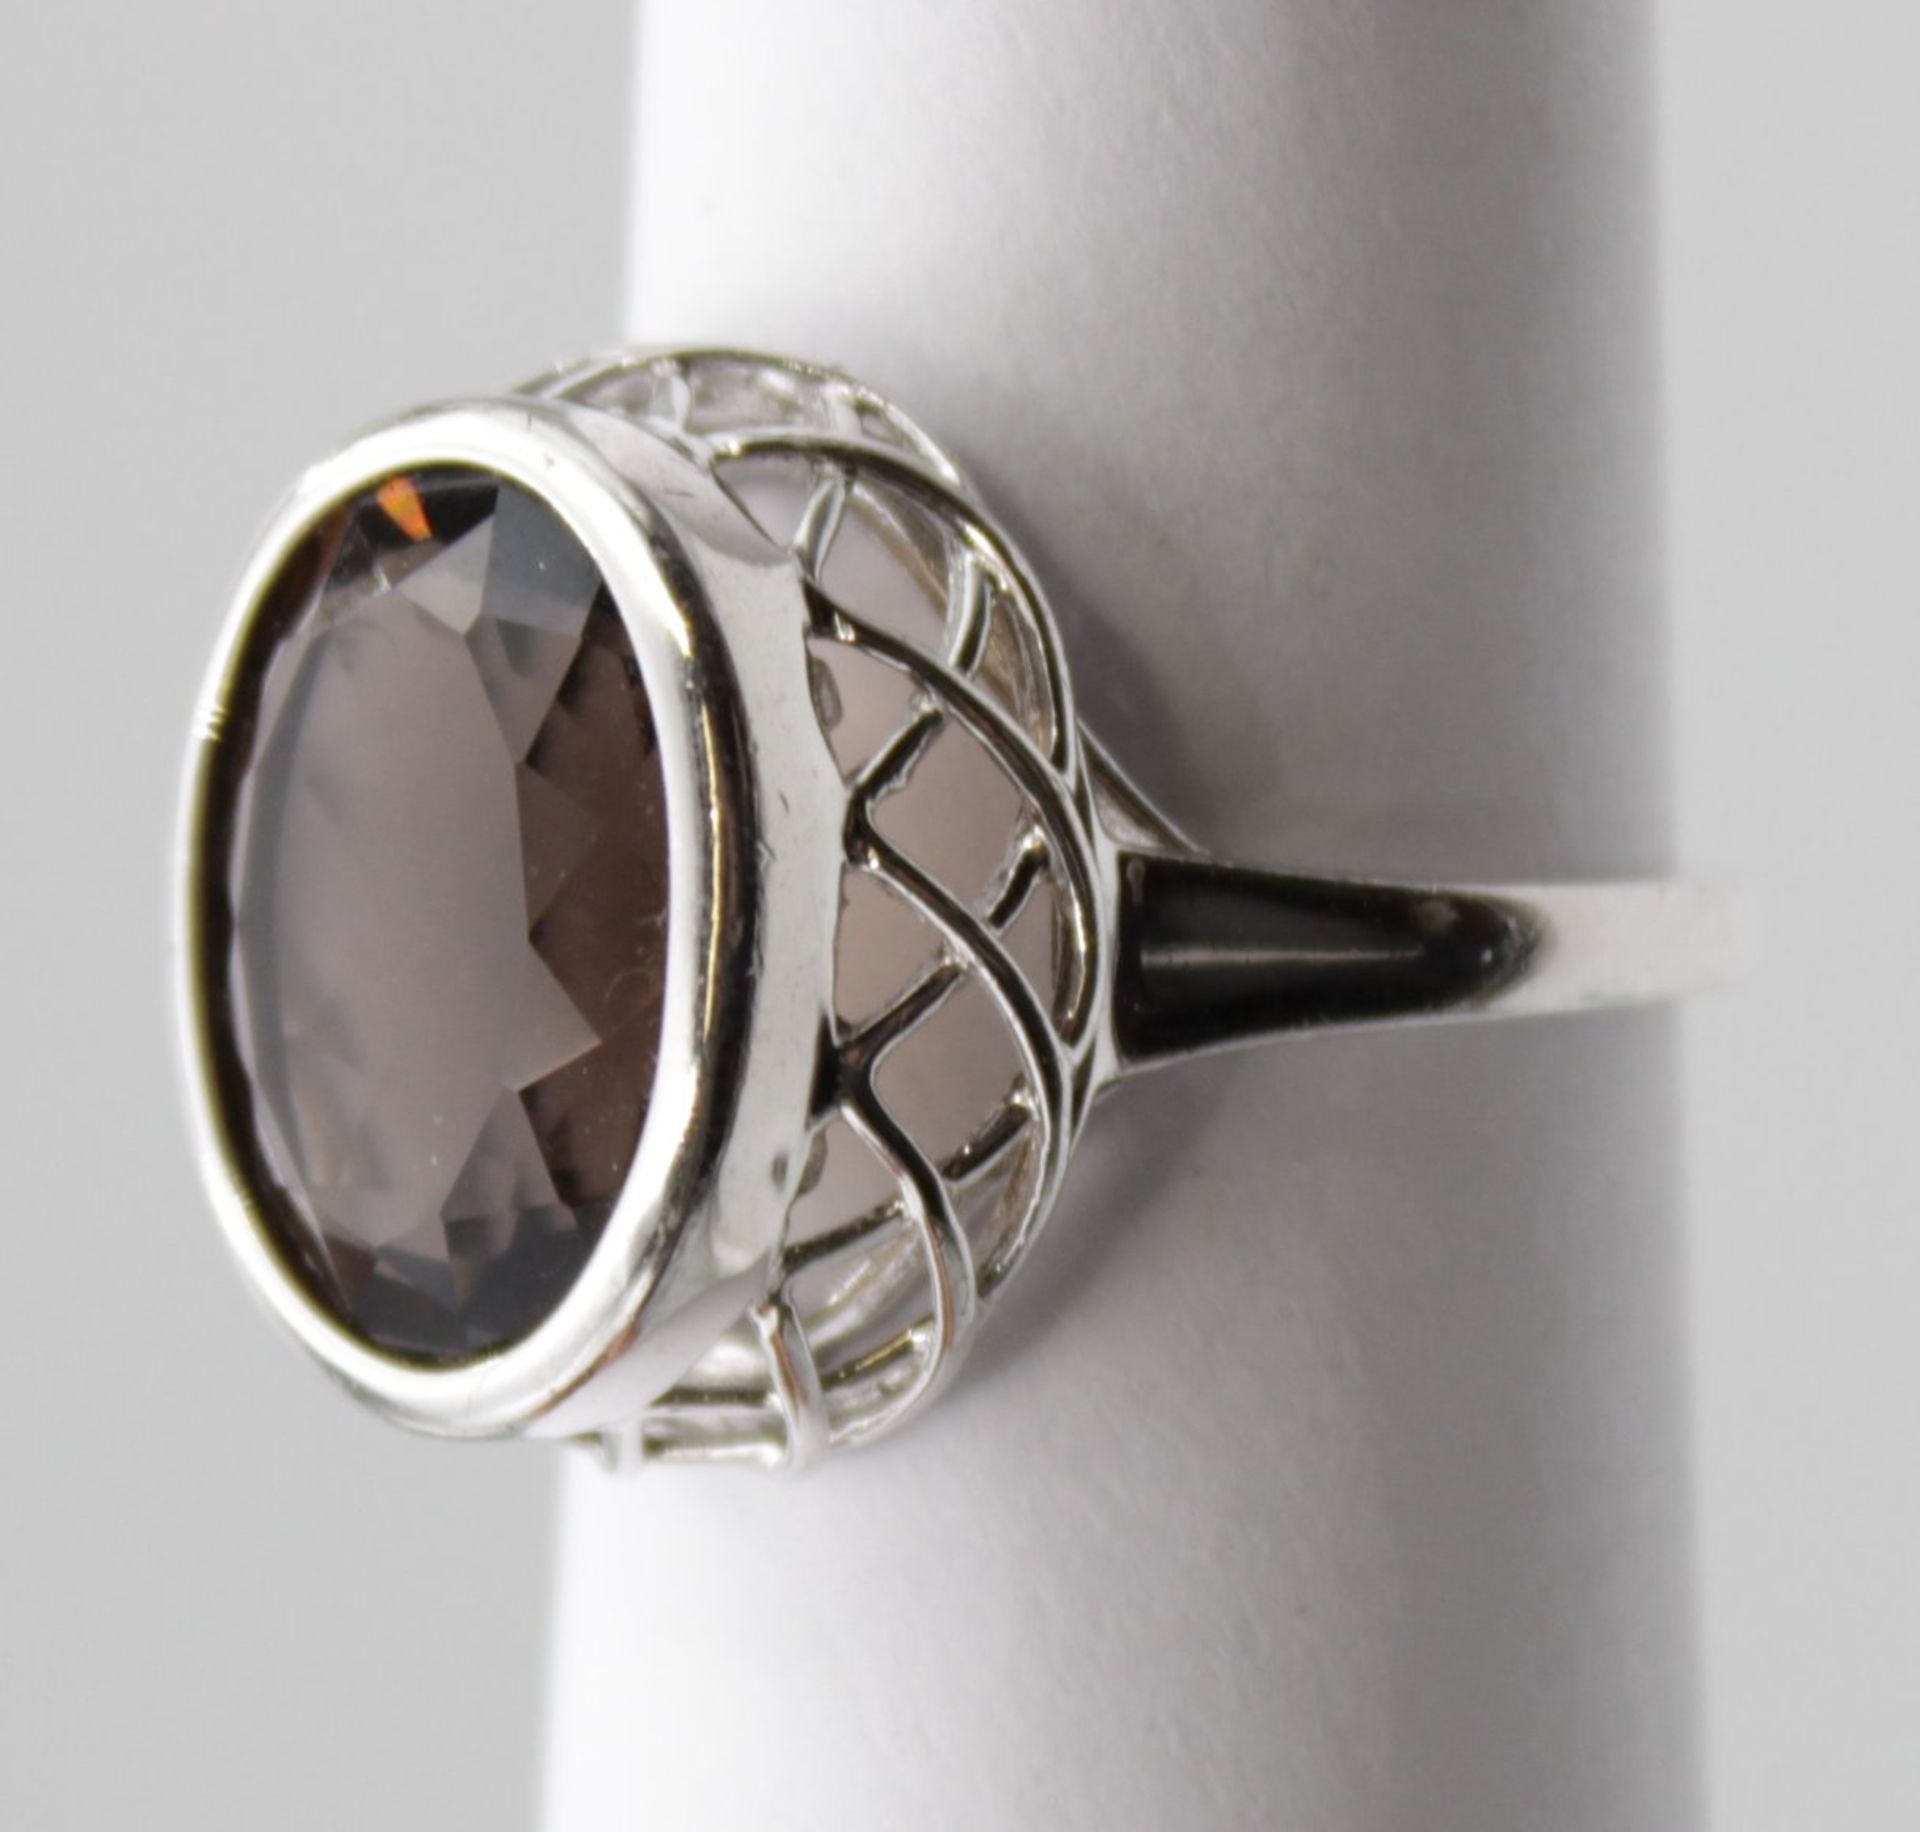 925er Silber-Ring, facc. brauner Stein, ca. 6,5gr.m, RG 59 - Bild 2 aus 5